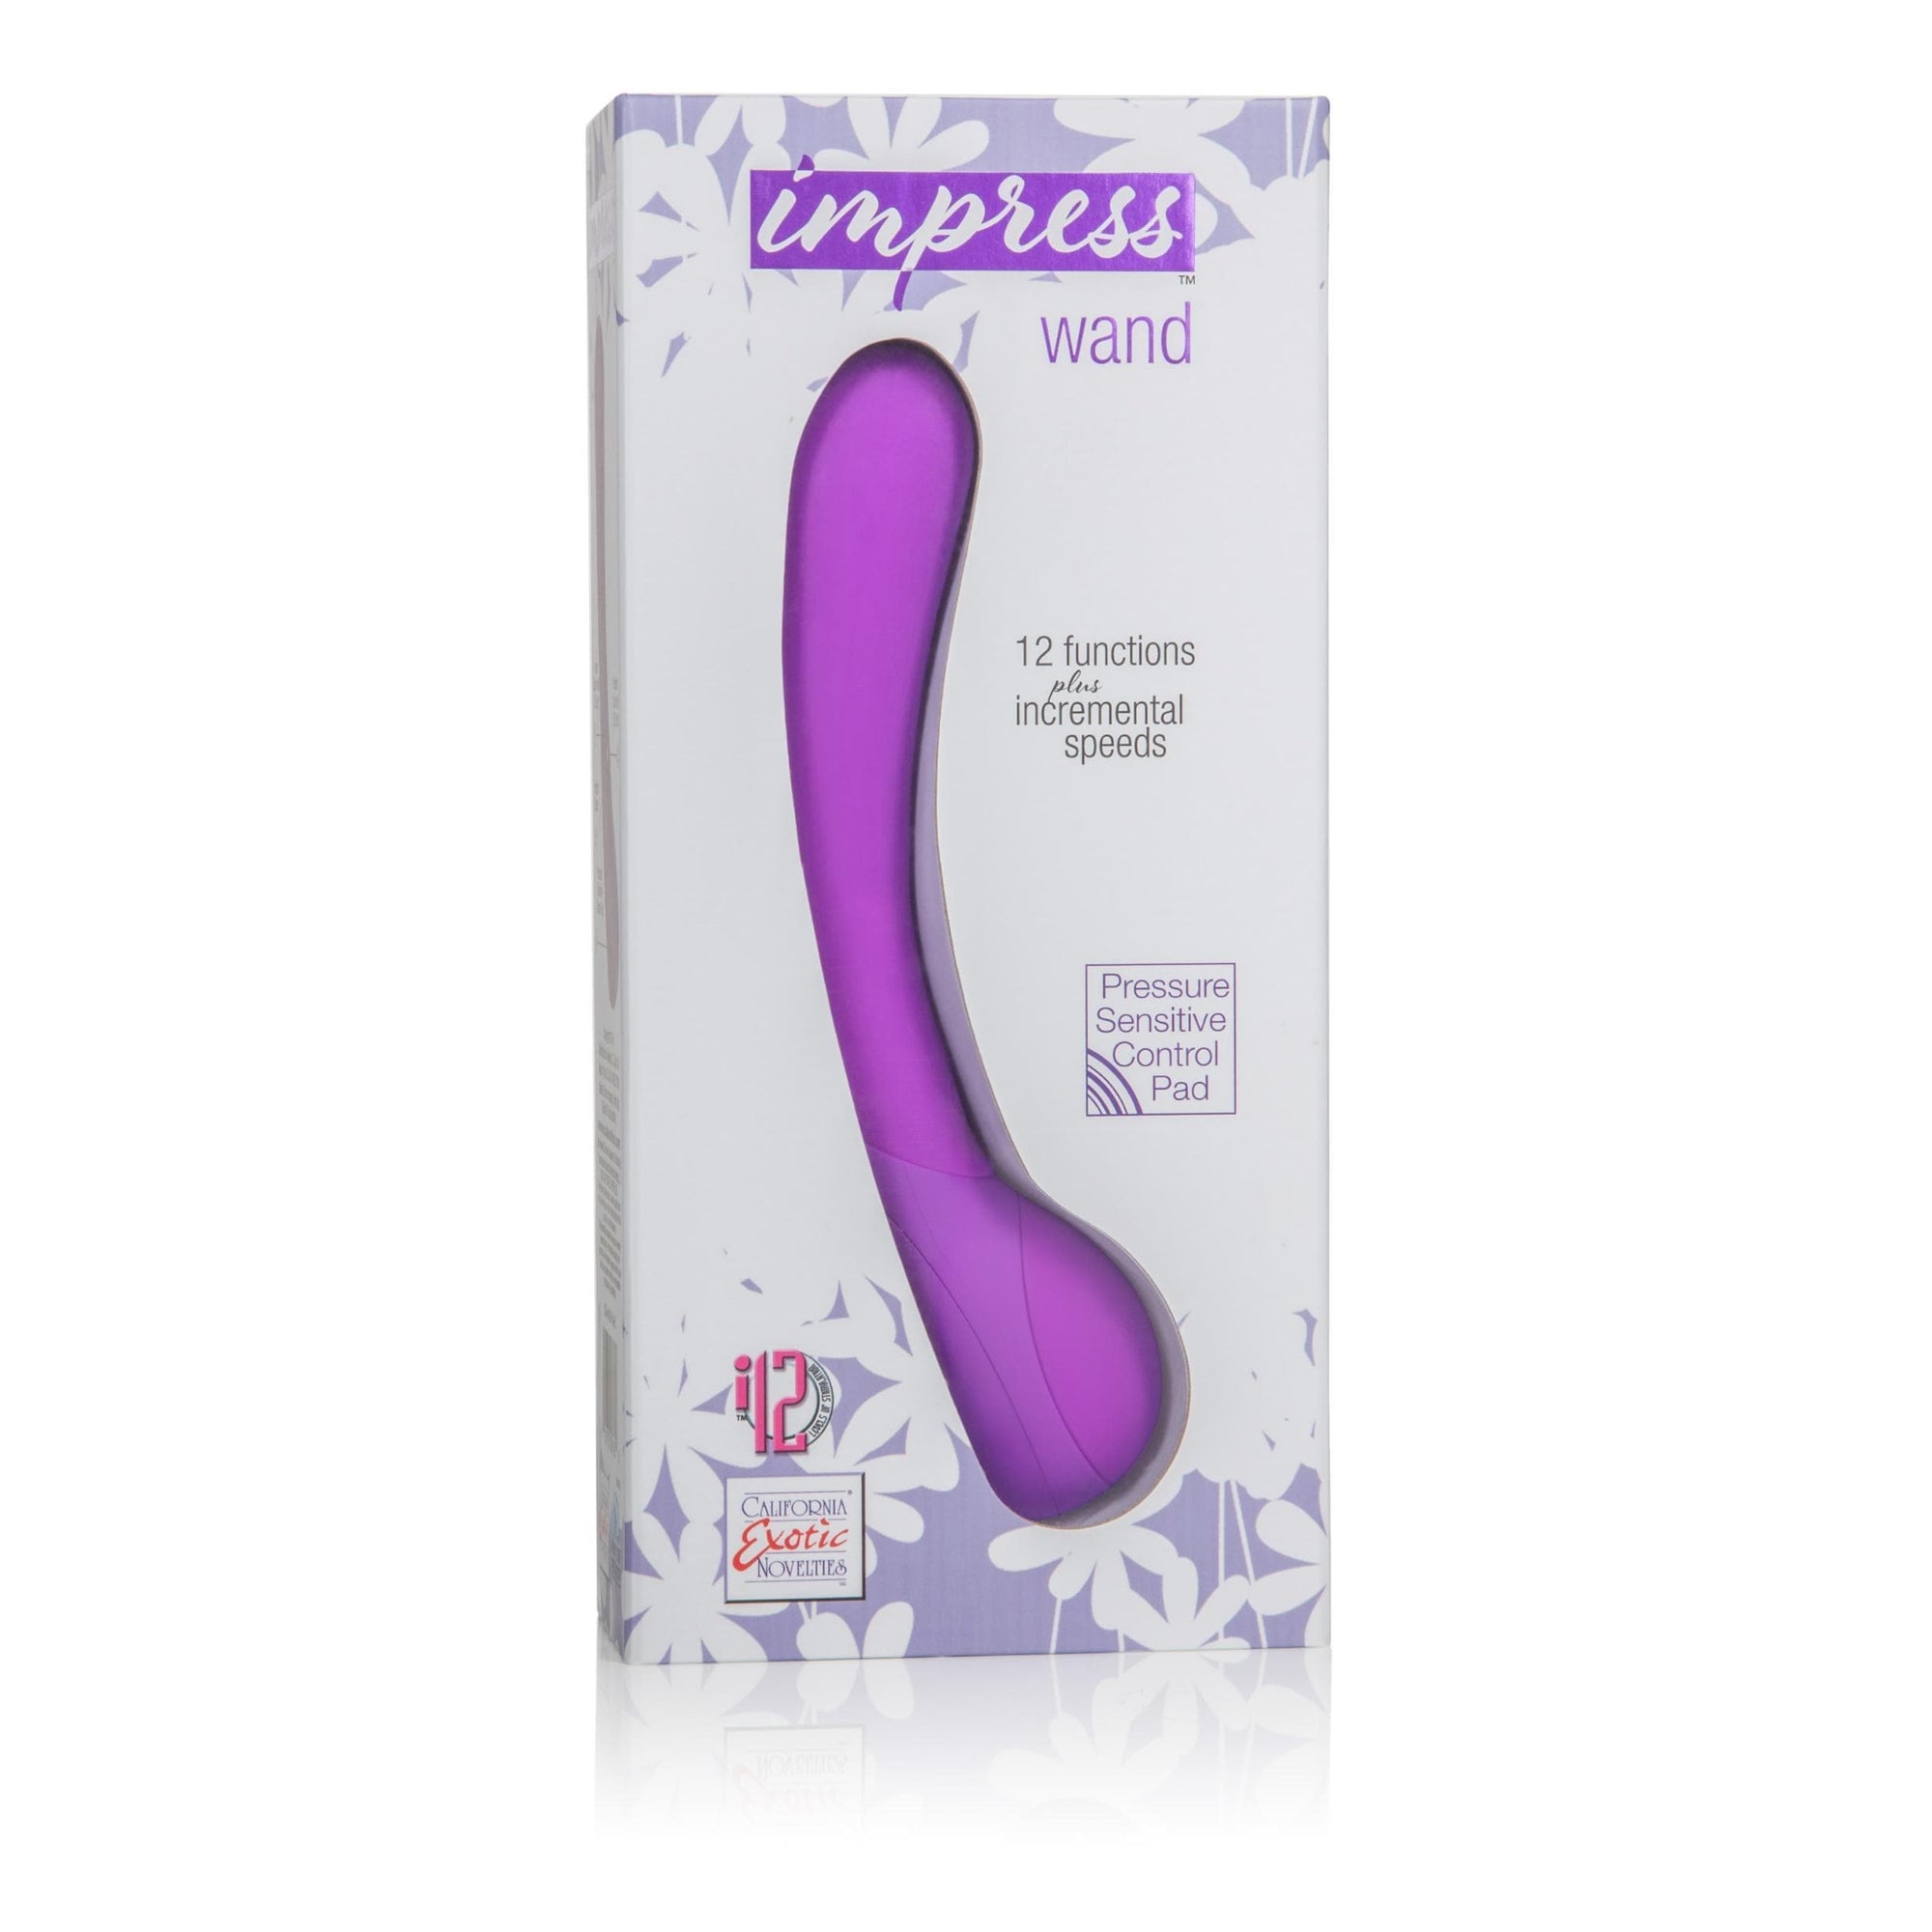 impress wand purple